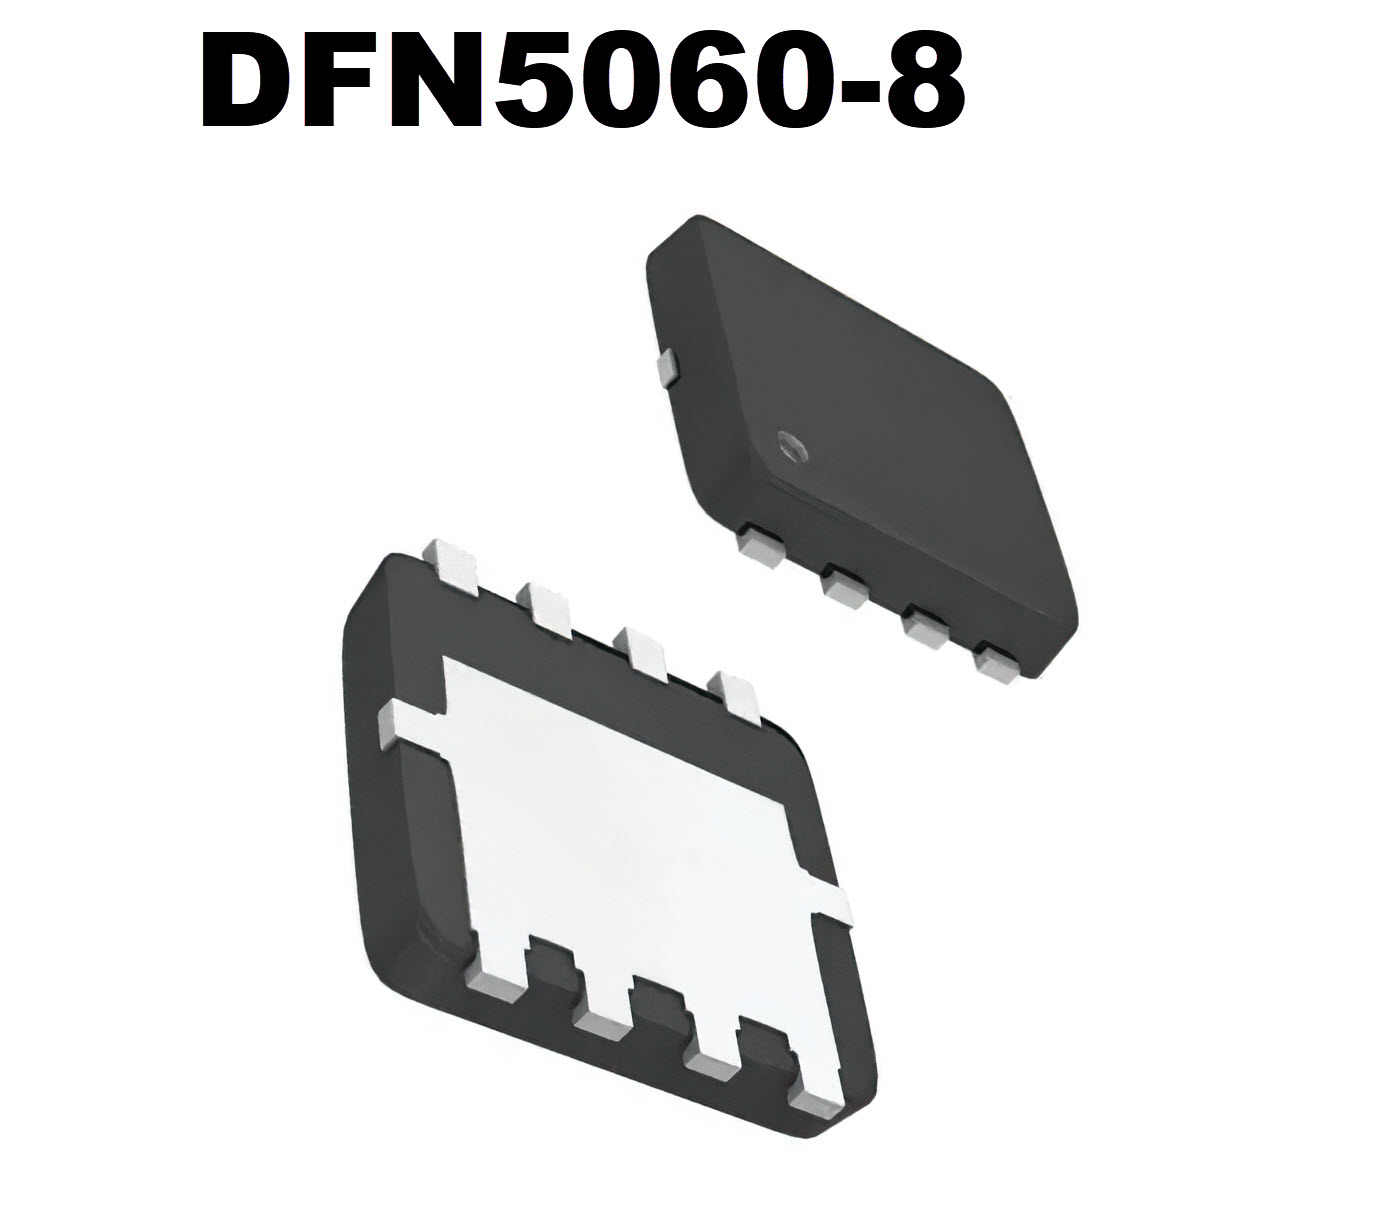 DFN5060-8